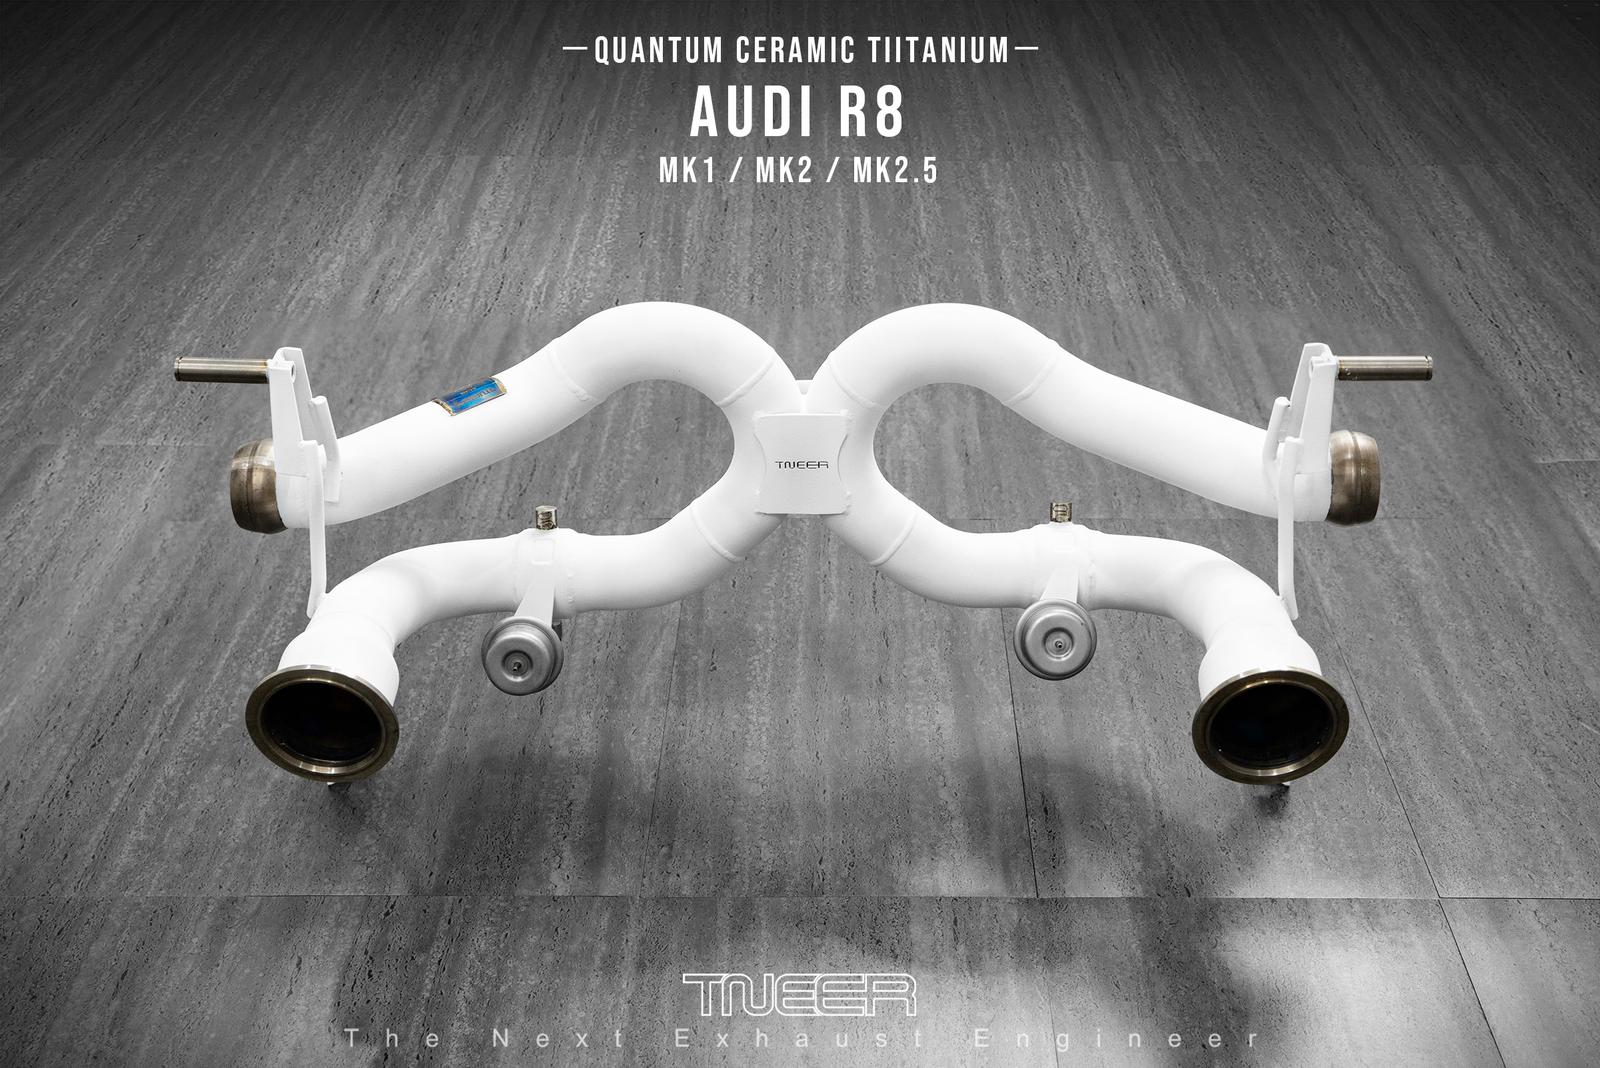 AUDI R8 (MK1.5) V8 TNEER Titanium Special Edition Quantum Ceramic Race Exhaust (Non-Valvetronic)